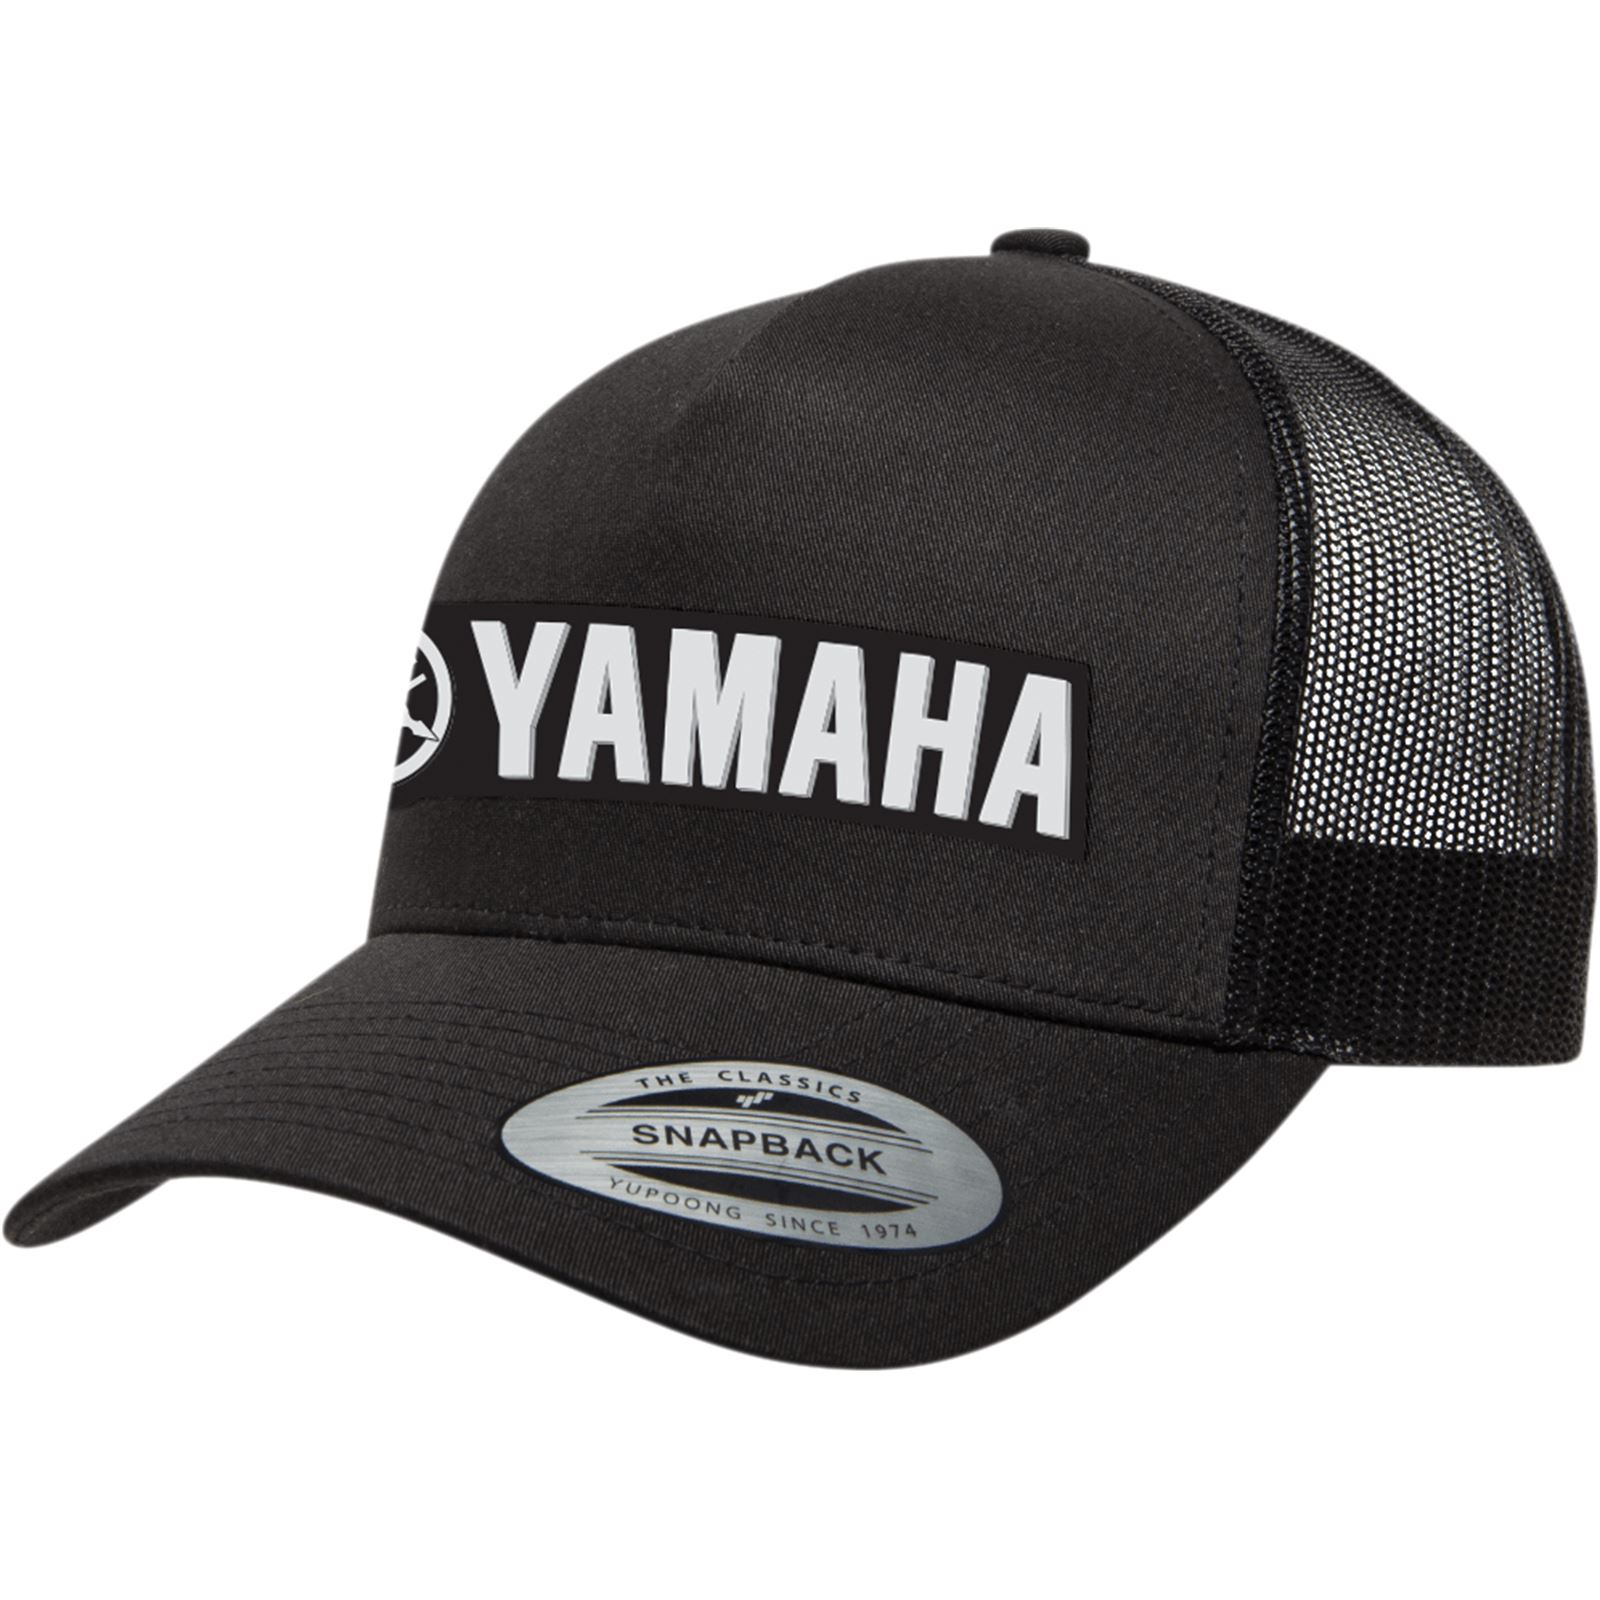 Yamaha mesh snap back - Gem